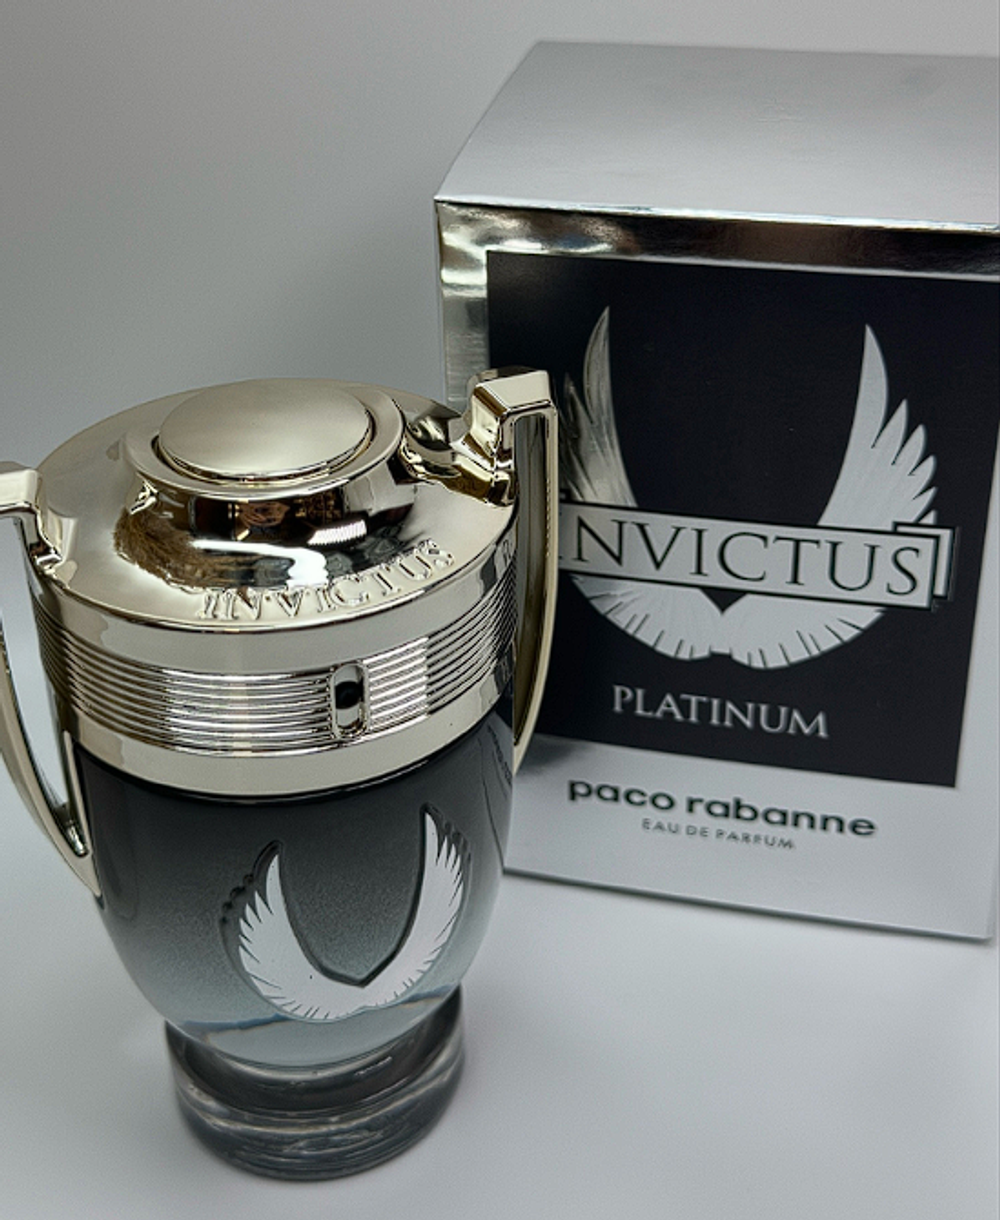 Paco Rabanne Invictus Platinum 100 ml (duty free парфюмерия)